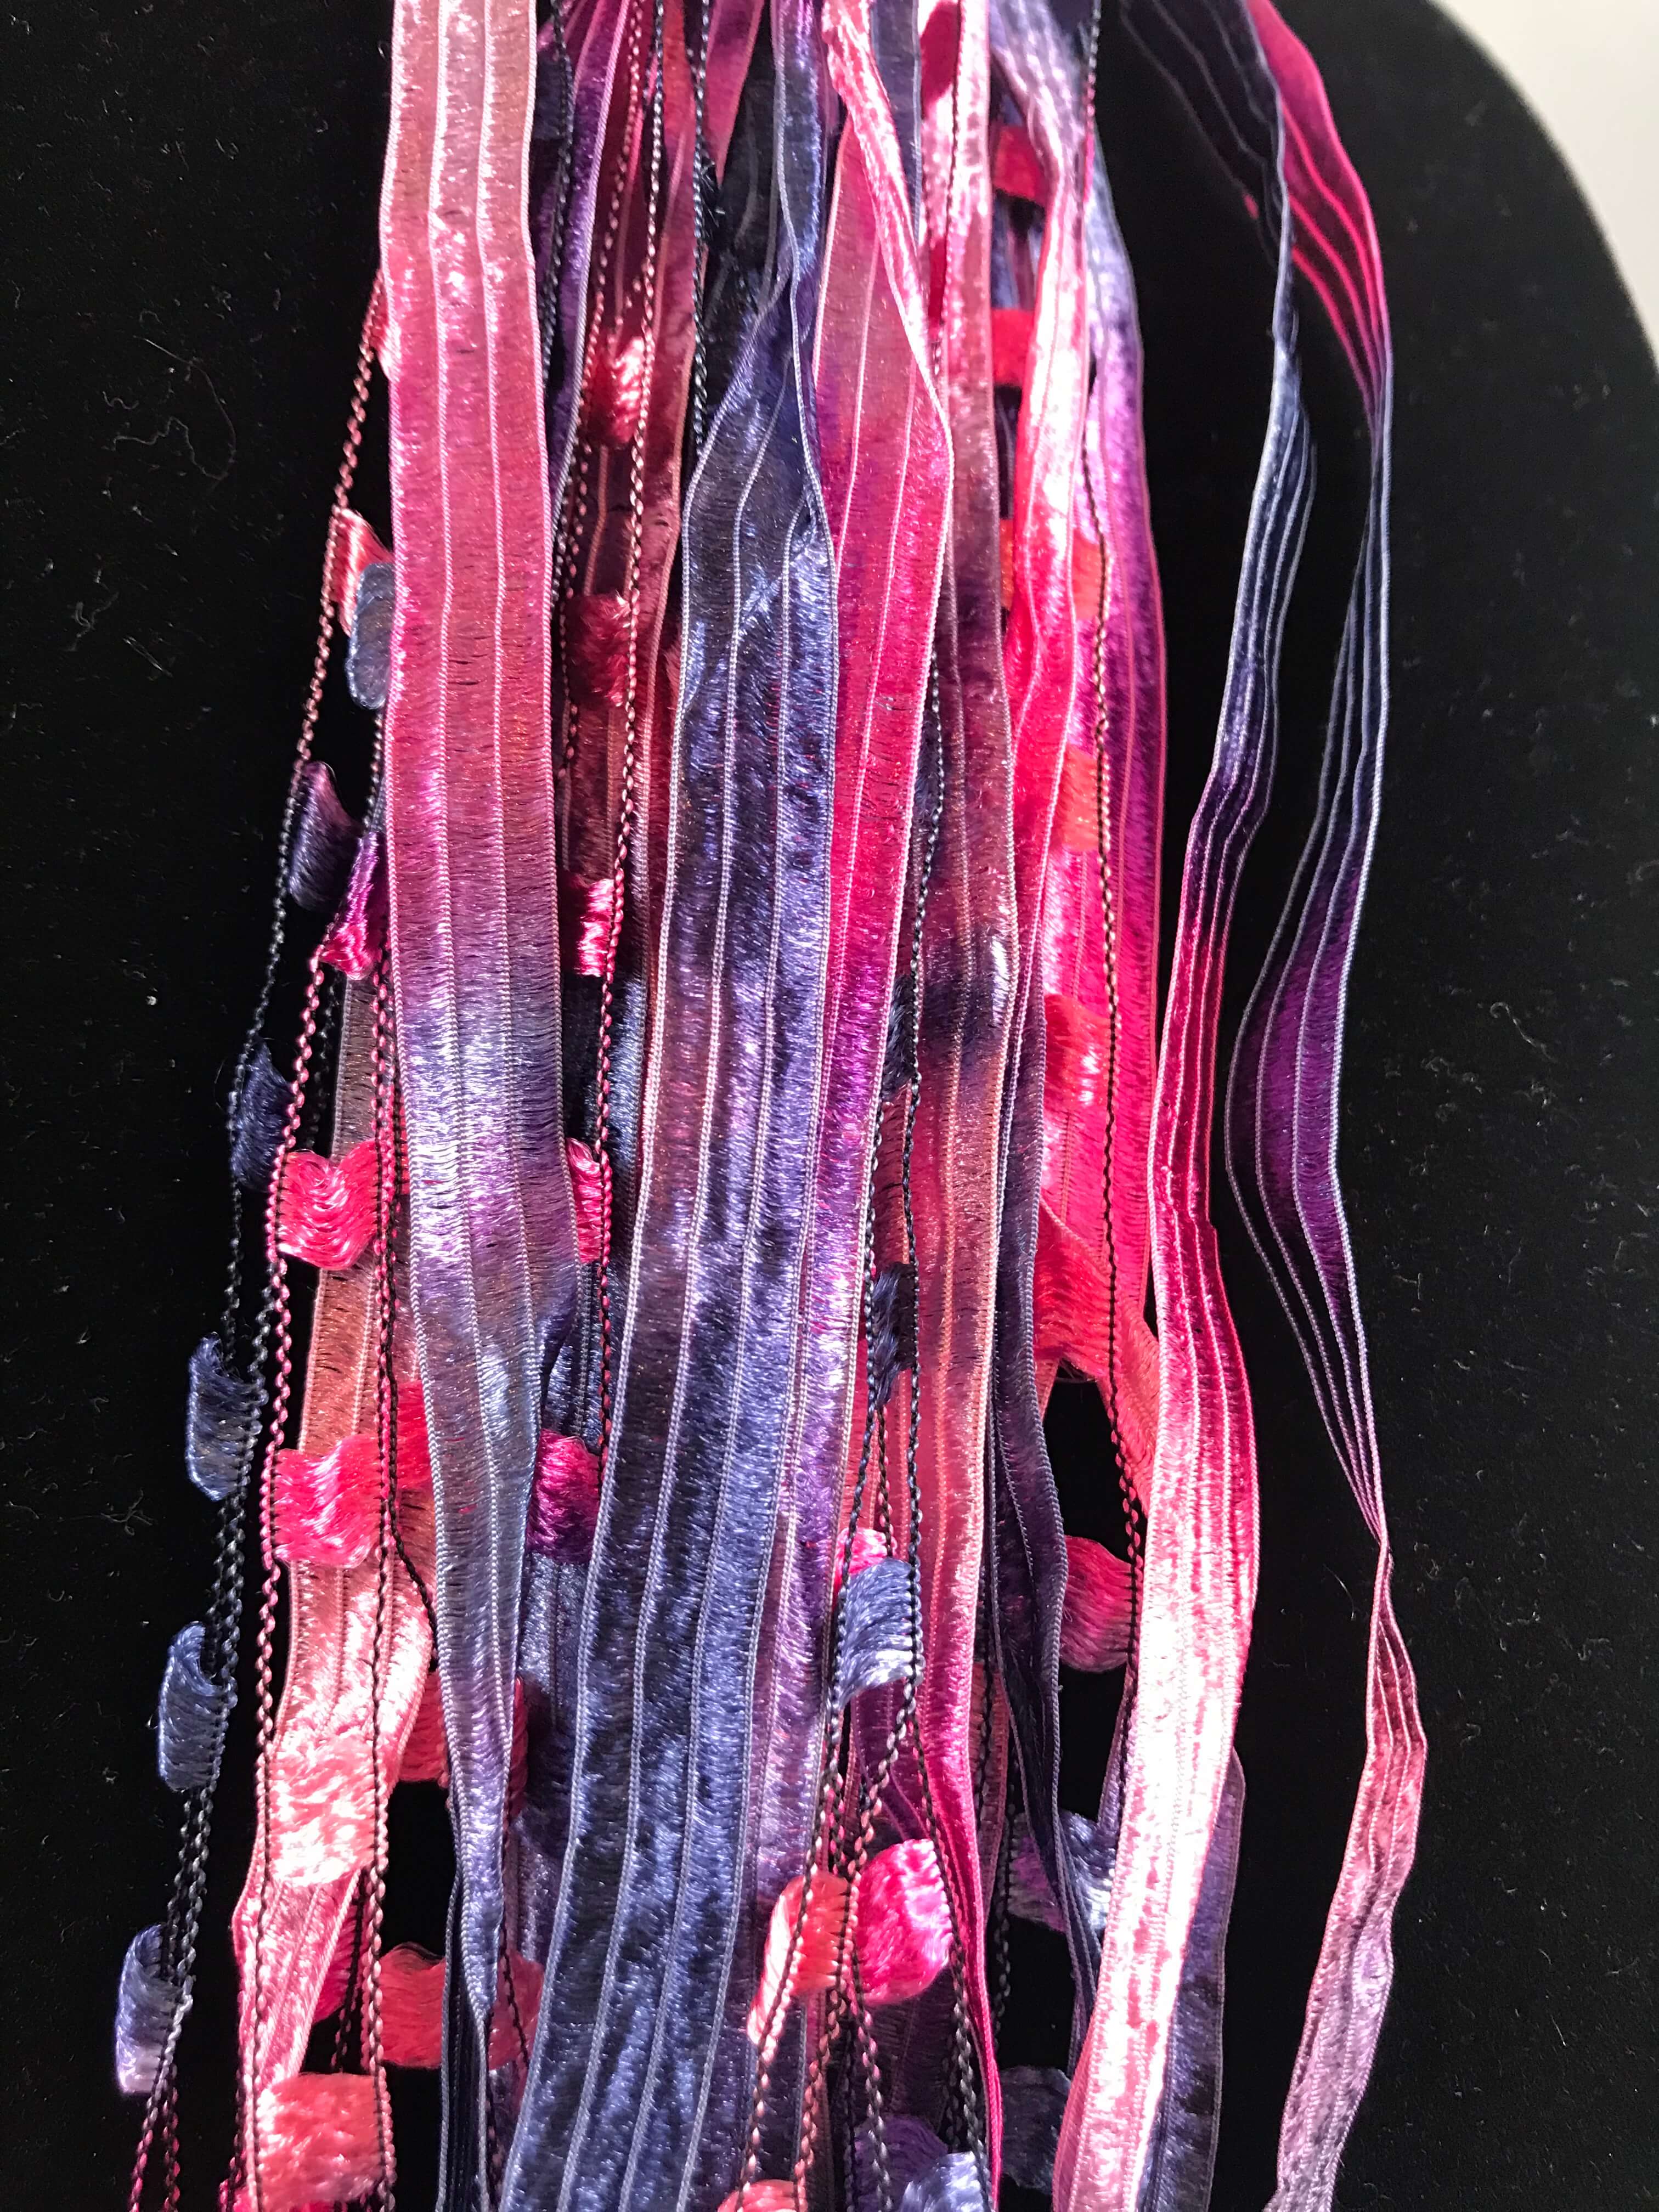 Hot Pink Sea | Ribbon | Fiber Necklace